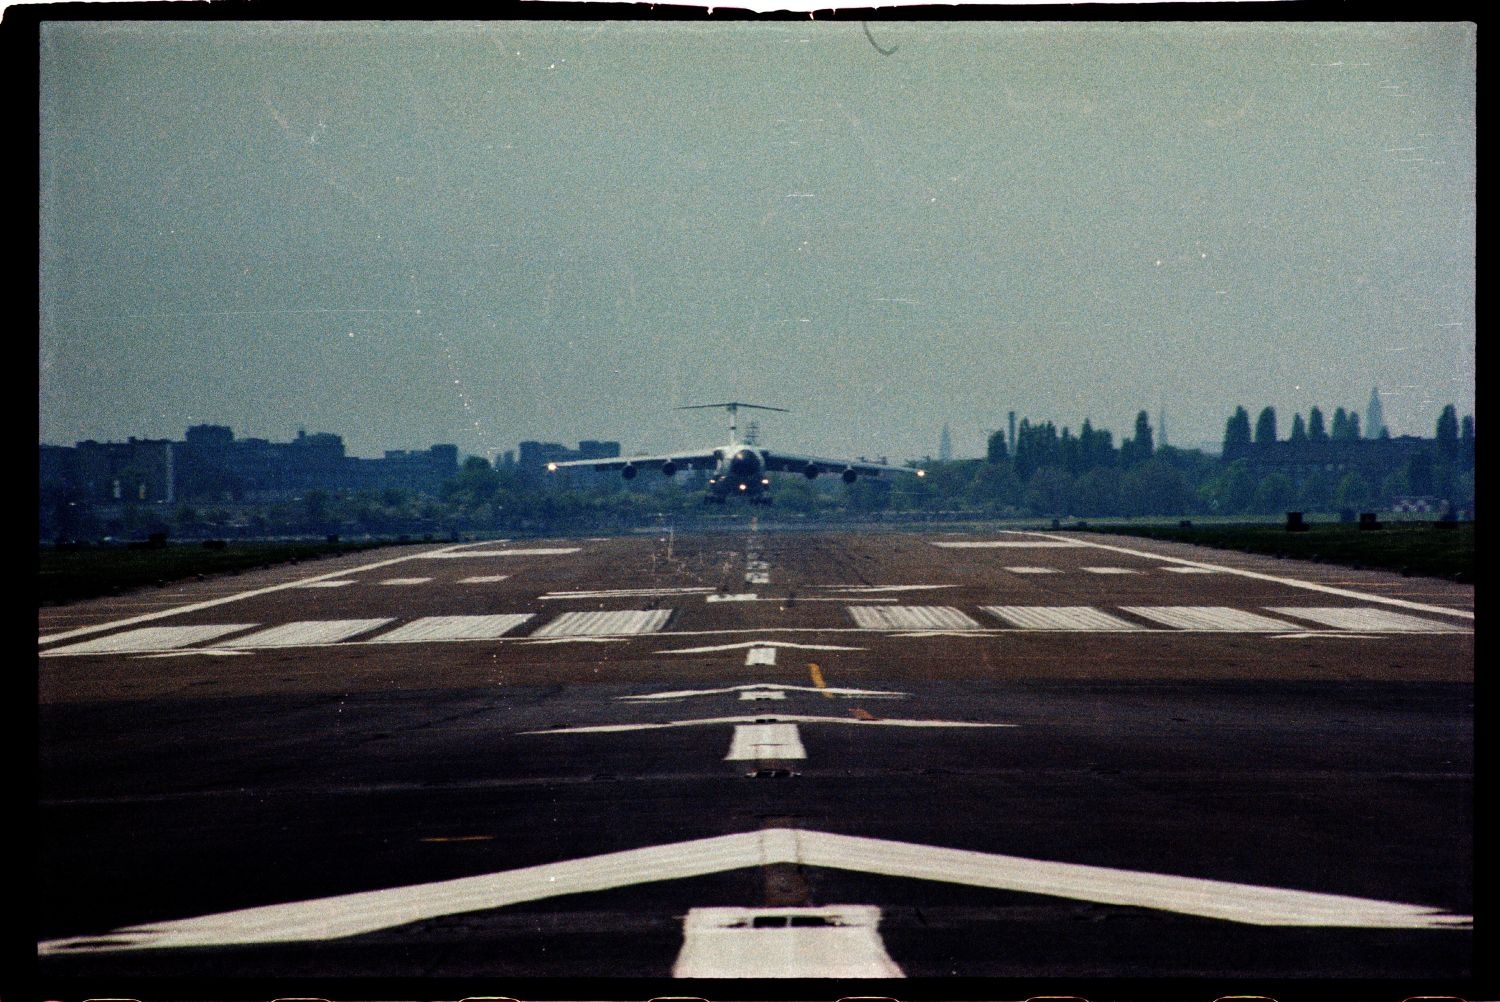 Fotografie: Tag der offenen Tür auf der Tempelhof Air Base in Berlin-Tempelhof